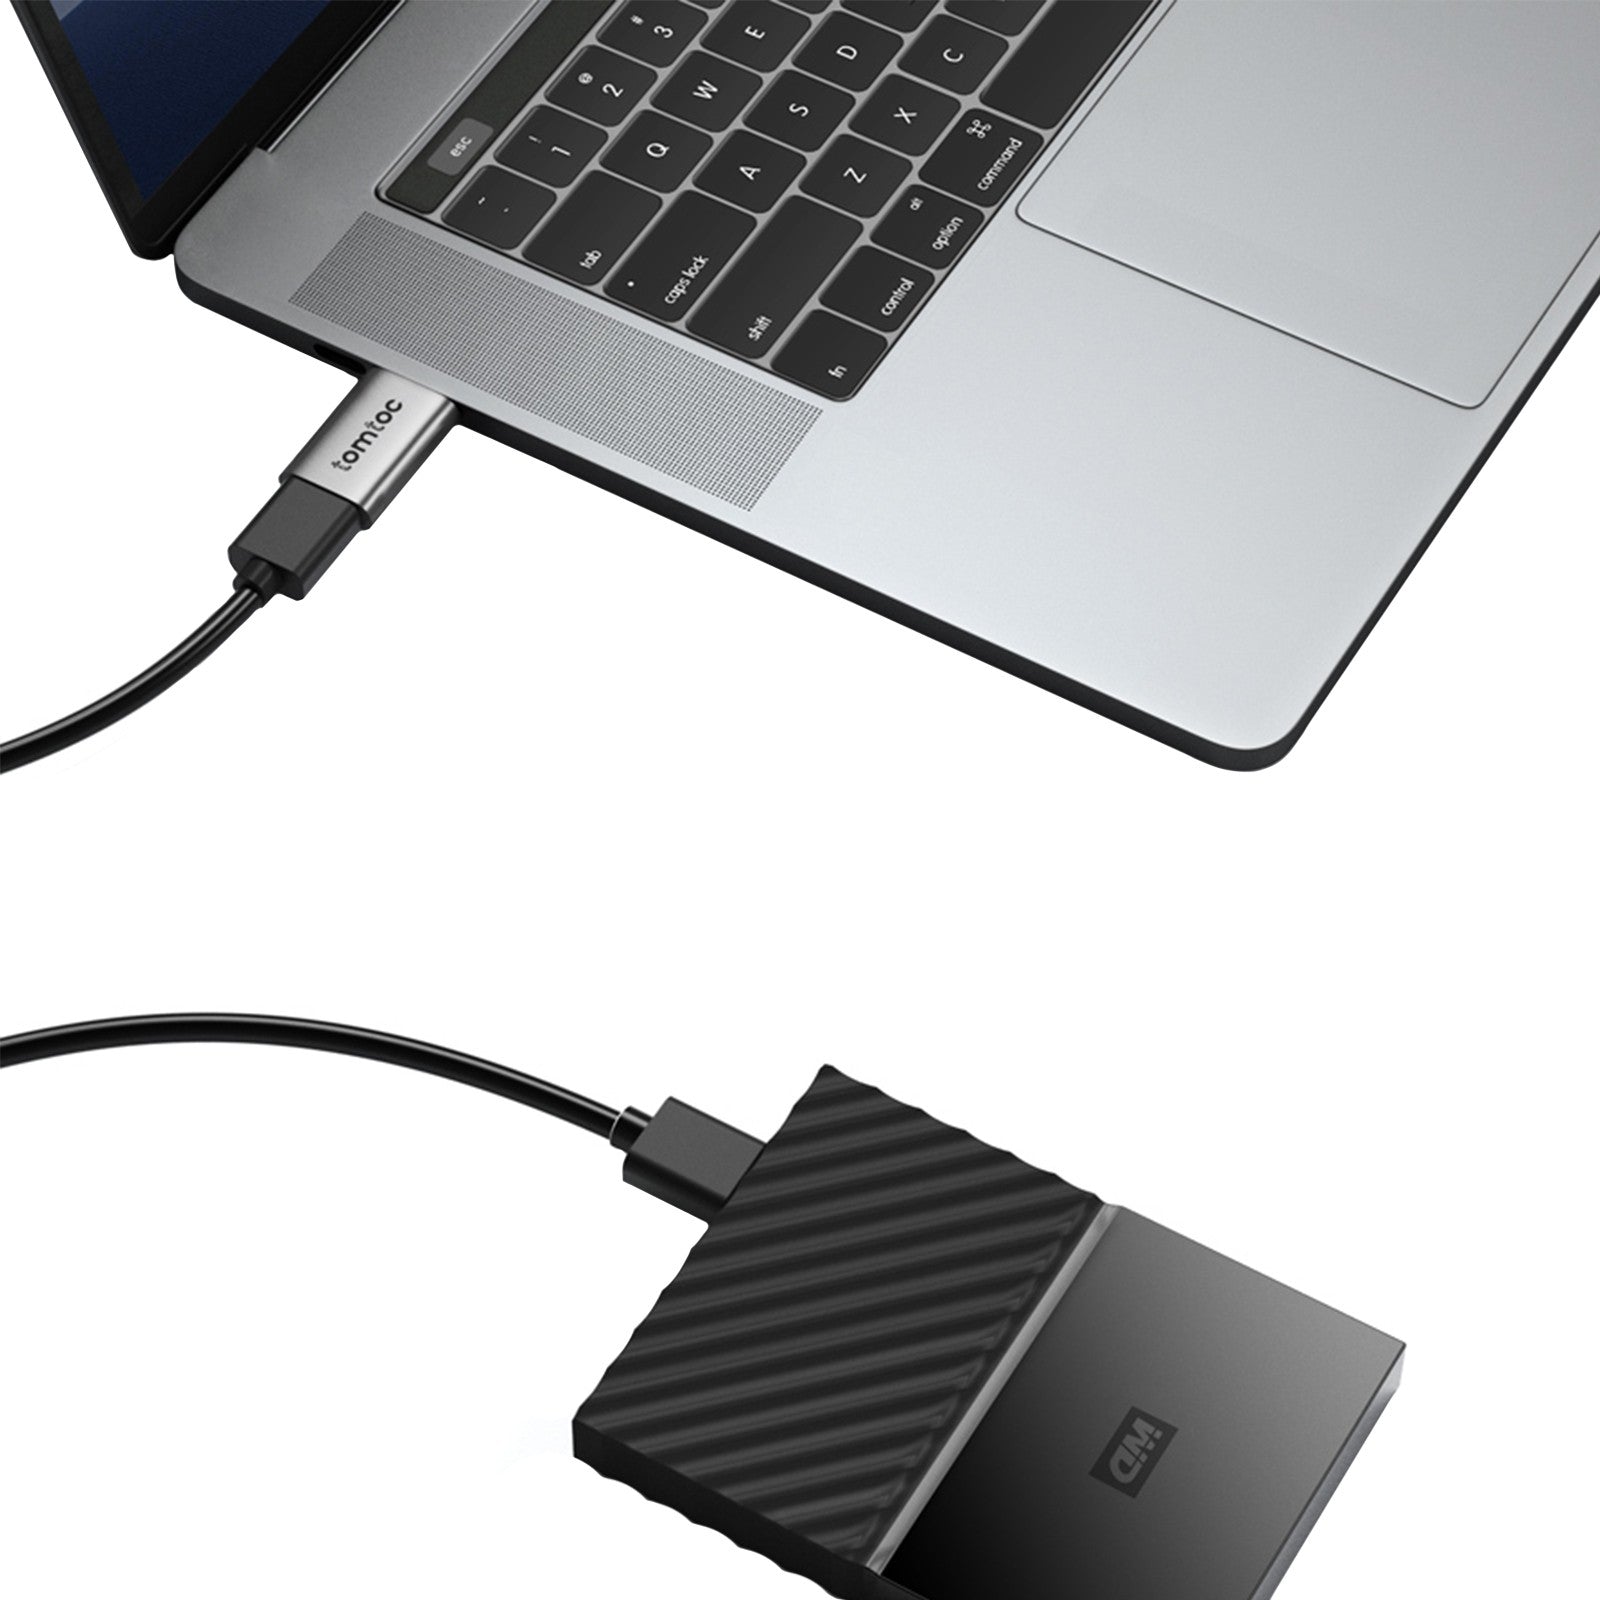 tomtoc Aluminum Type-C To USB 3.0 Adapter